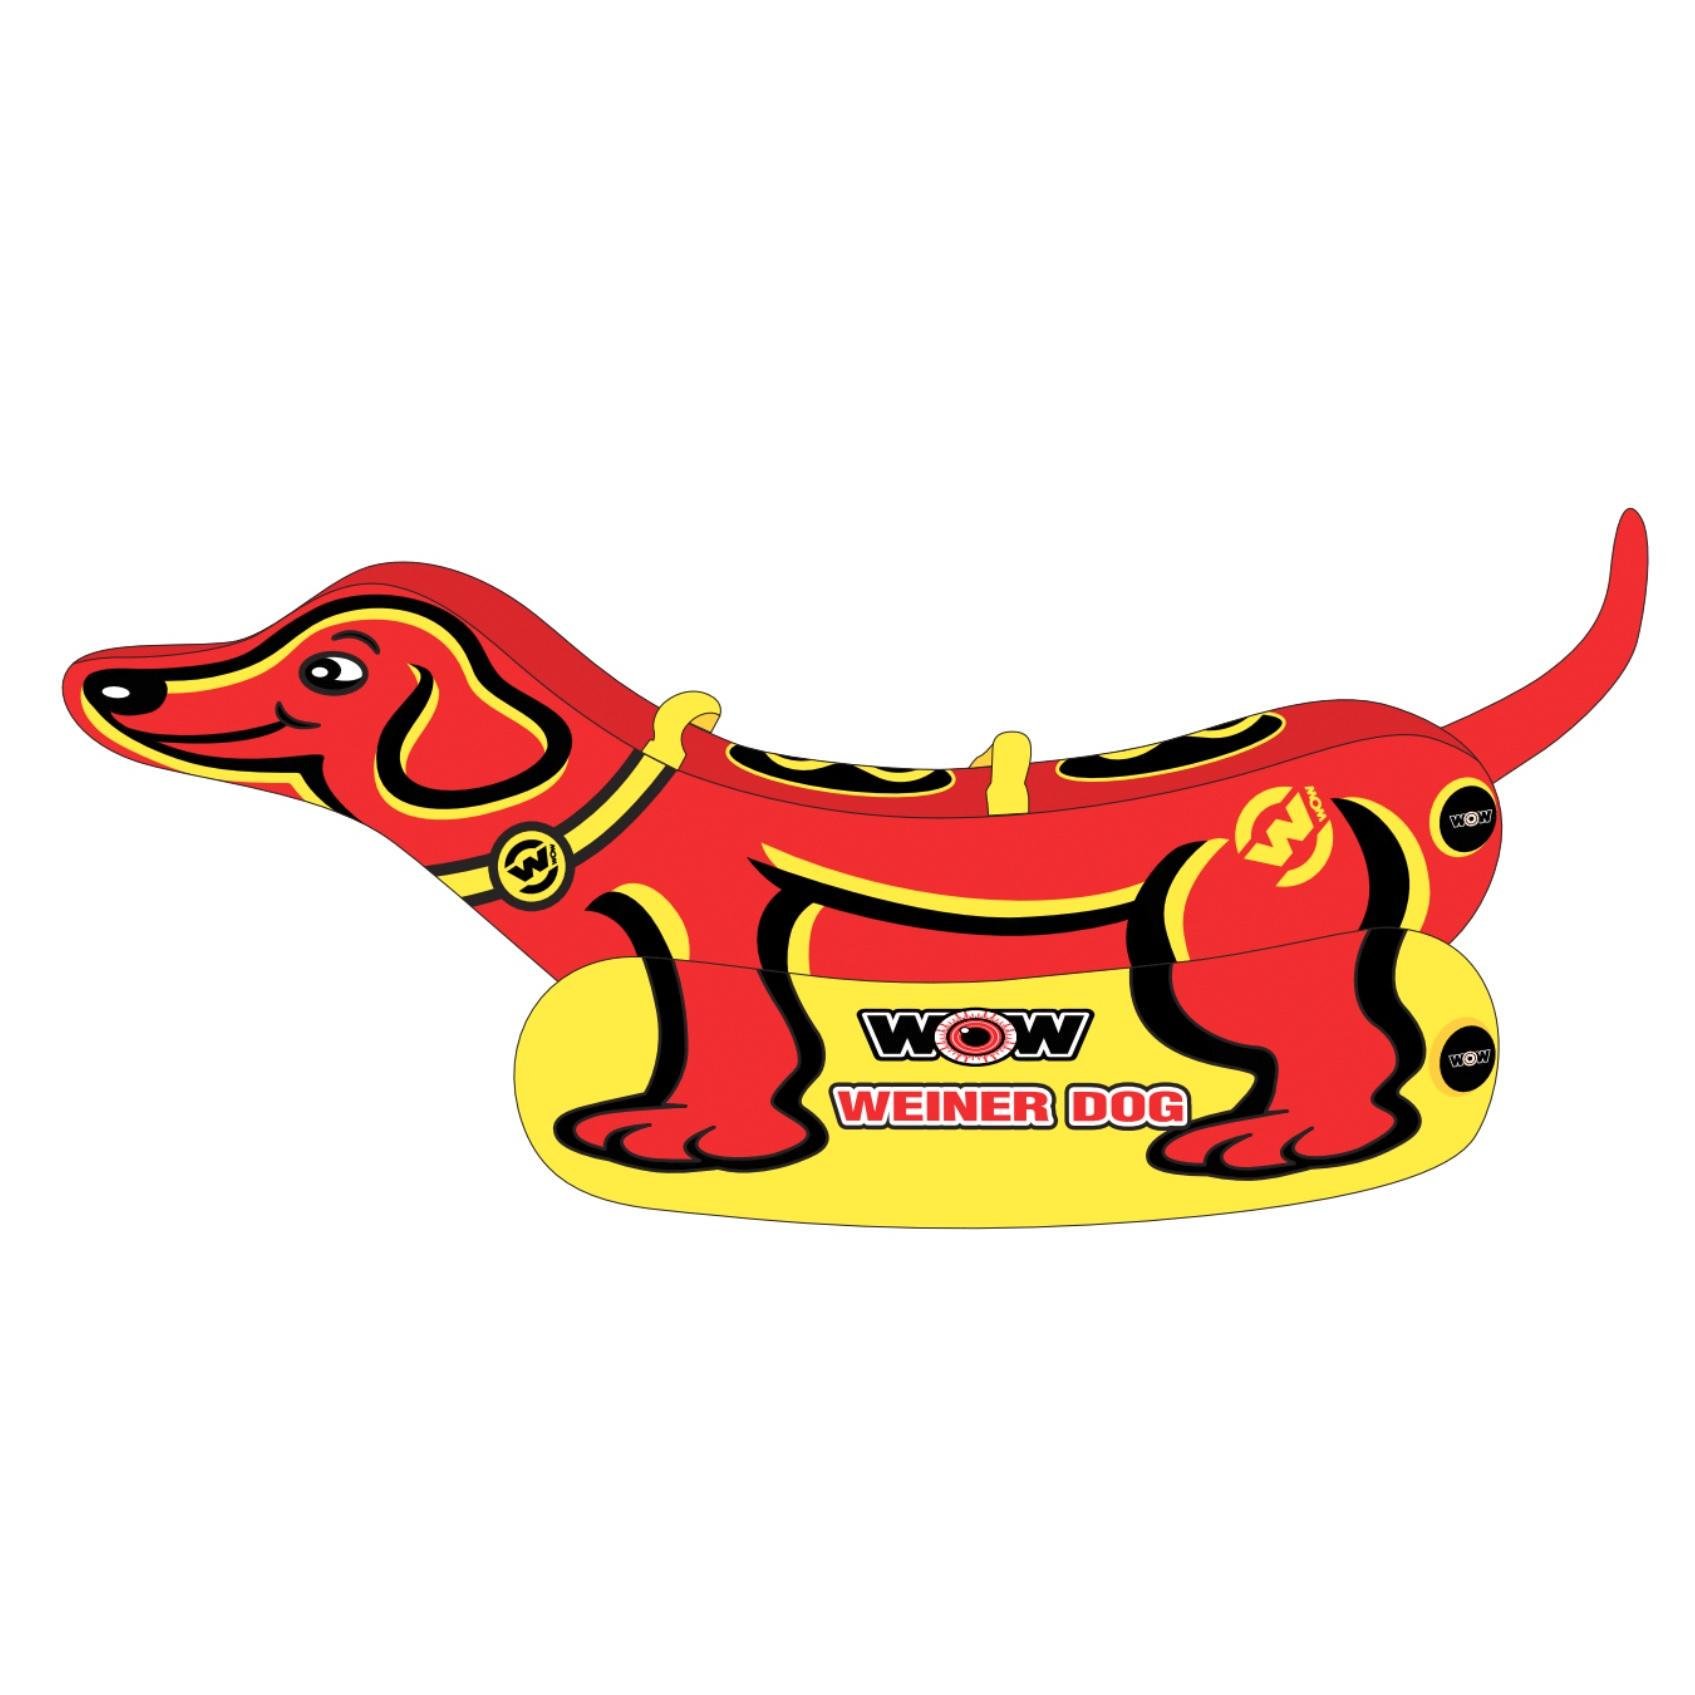 Балон буксируючий WEINER DOG 2 TOWAВLE (19-1000)